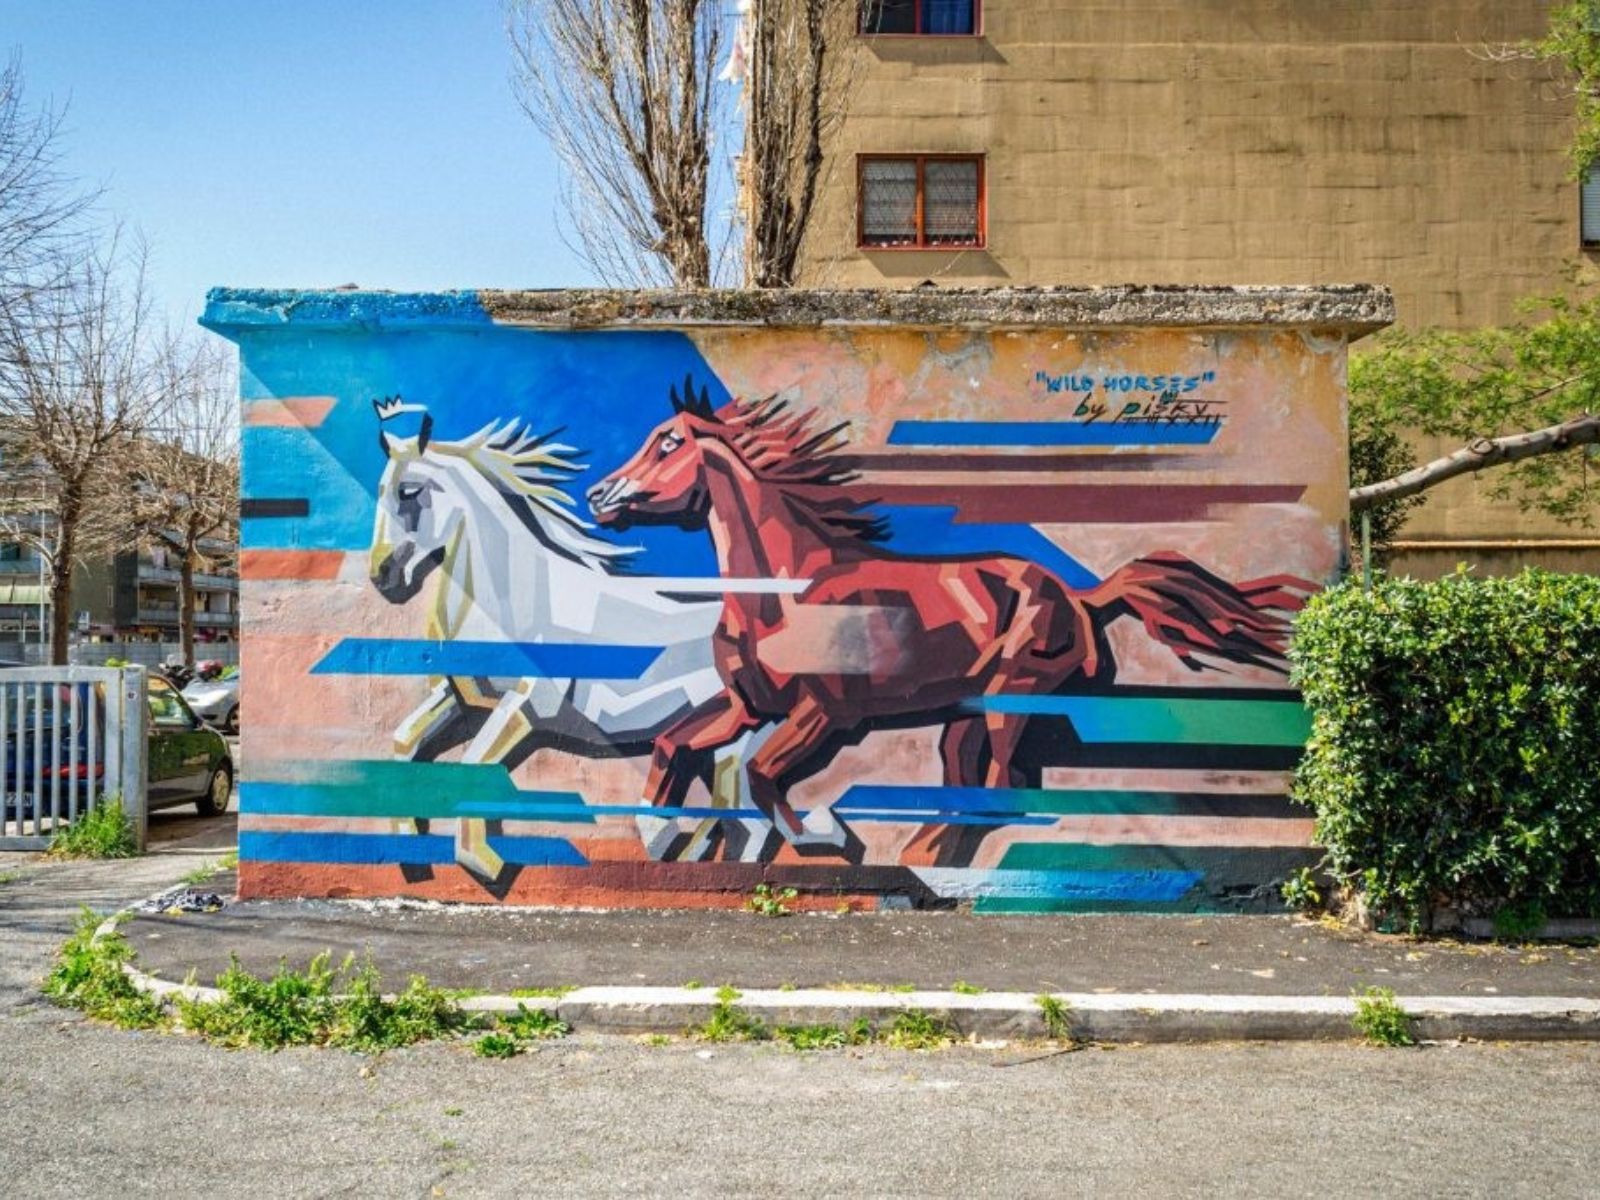 Arte callejero en Roma: mural de PISKV